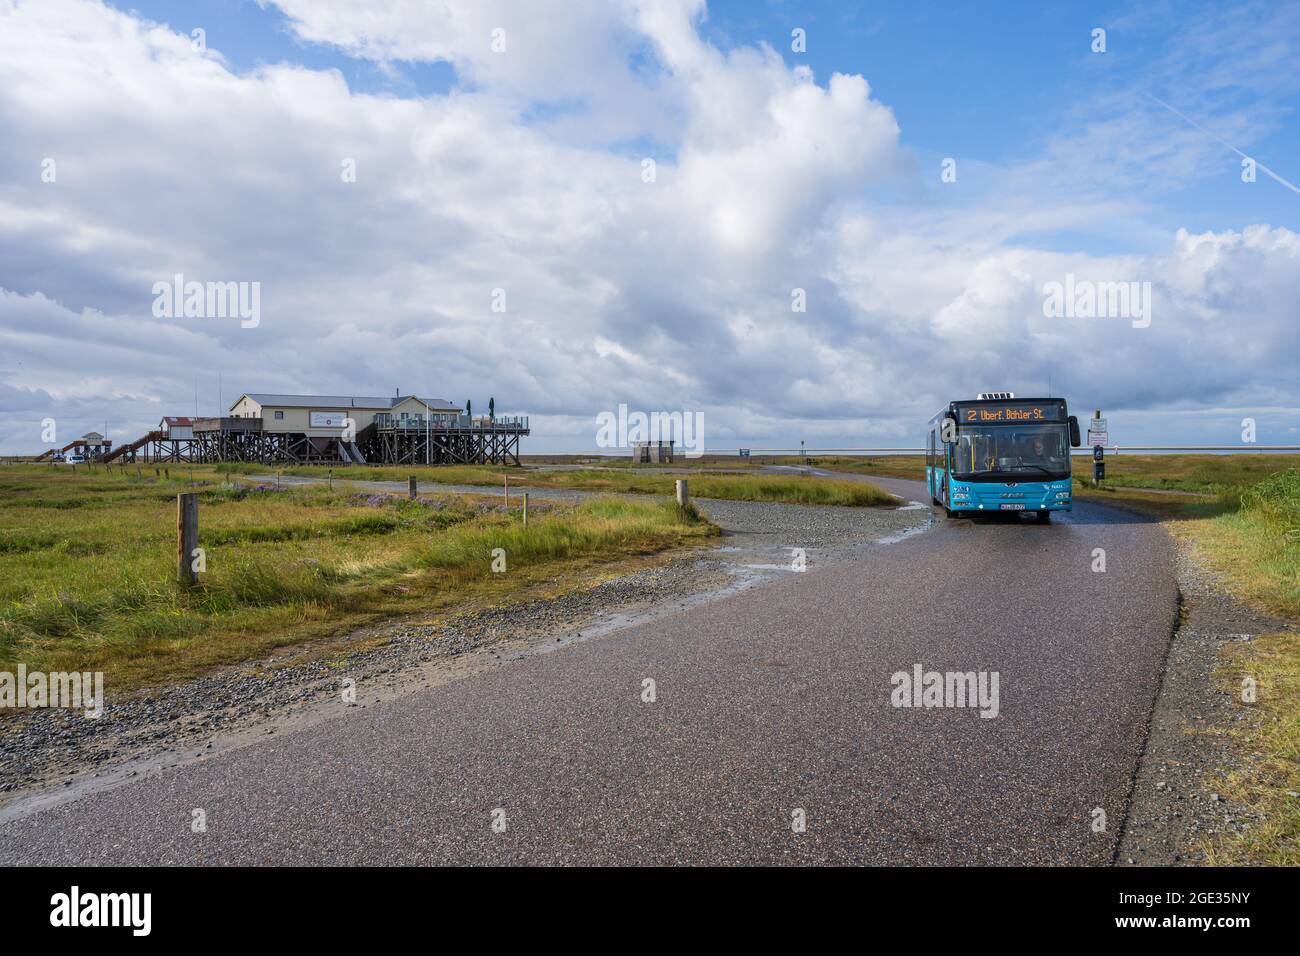 Ein Schuttelbus transportiert Touristen zu den Pfahlbauten bei Pöhl im Wattenmeer Stock Photo